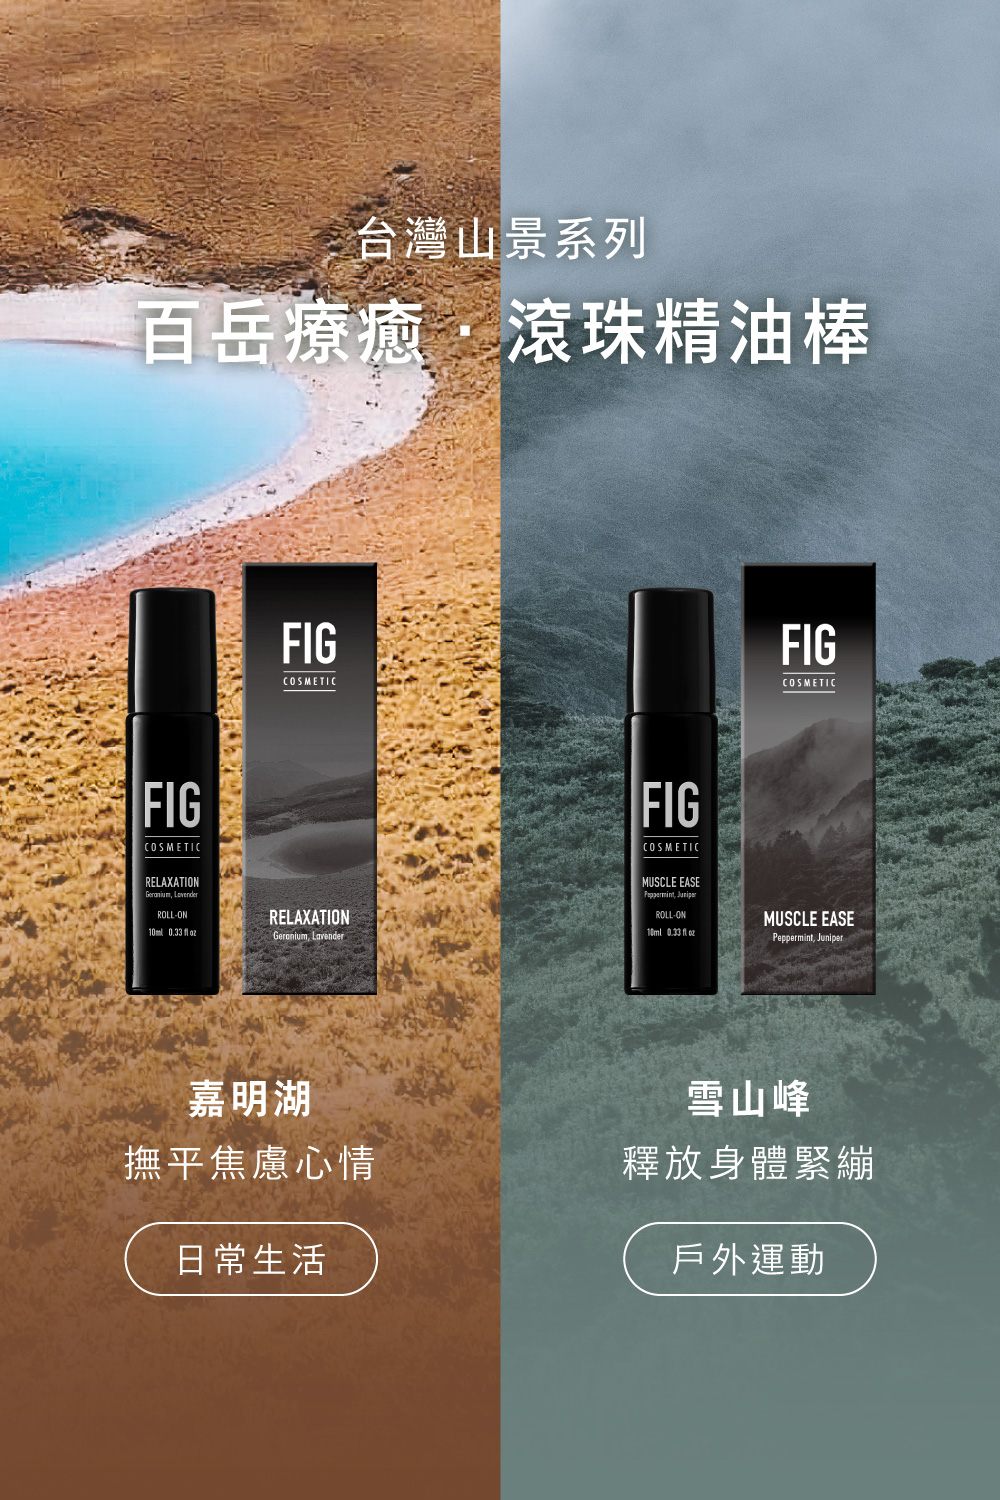 台灣山景系列—百岳療癒滾珠精油棒。FIG雪山峰精油棒釋放身體緊繃，適合戶外運動使用。FIG嘉明湖撫平焦慮心情，適合日常生活使用。